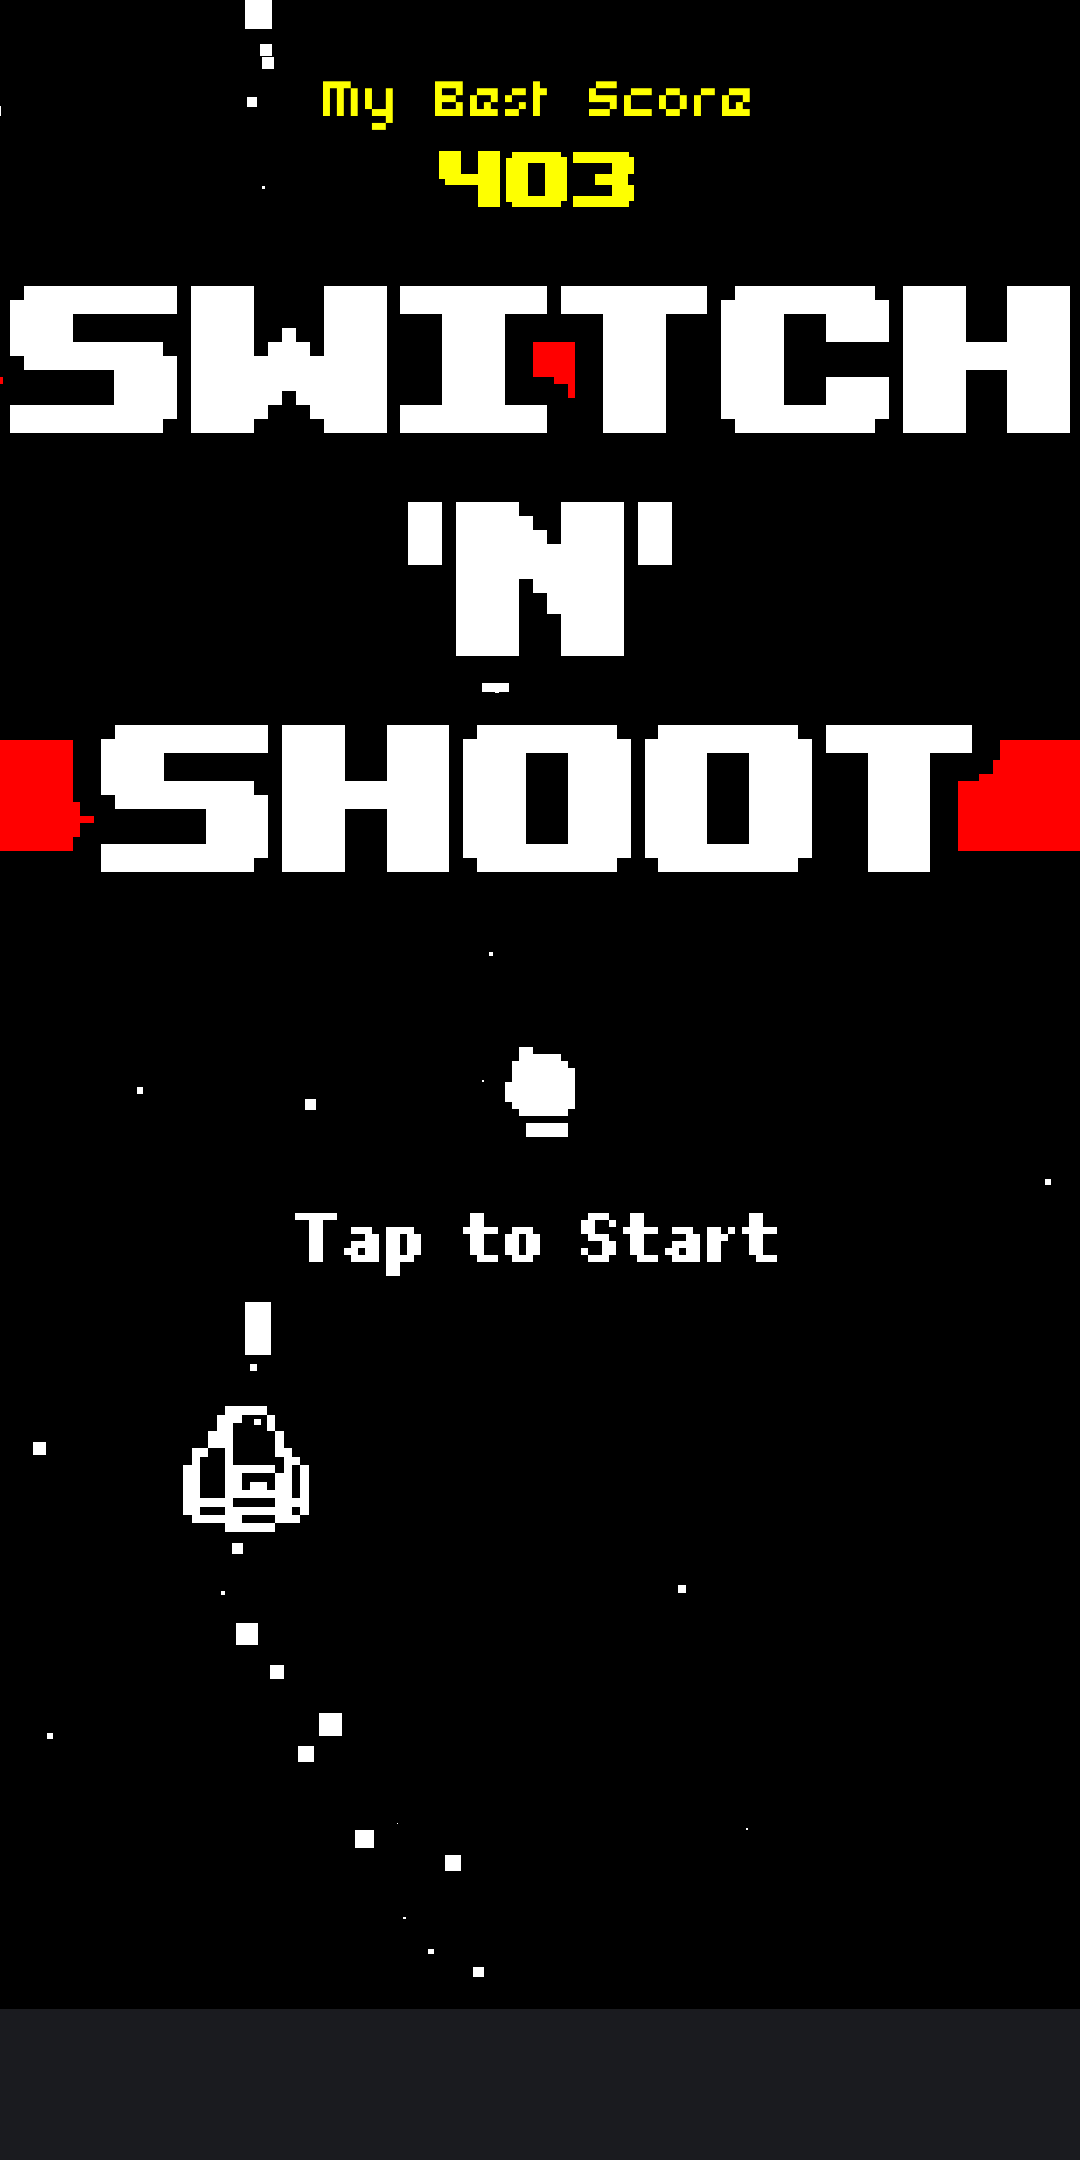 Screenshot: Switch’N’Shoot main screen, showing 403 as my top score